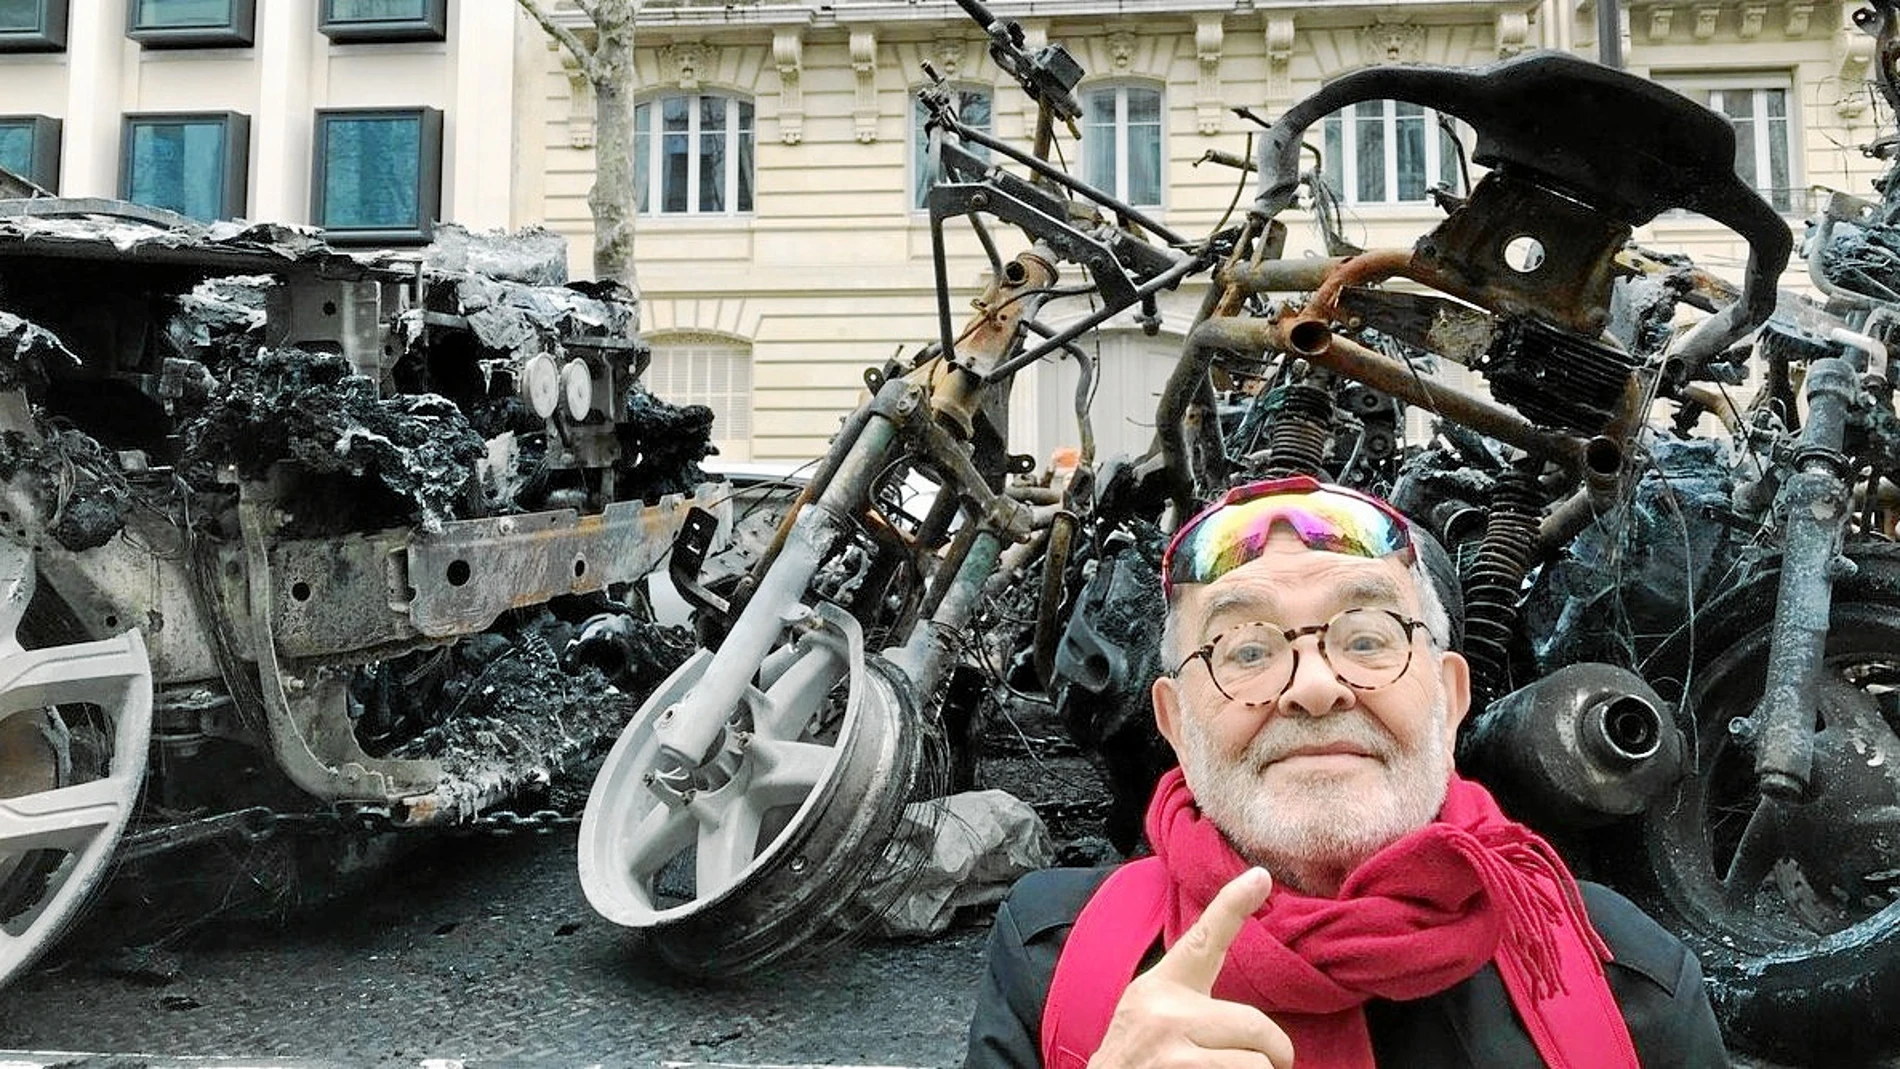 El autor, frente a varios vehículos quemados durante los últimos disturbios en París